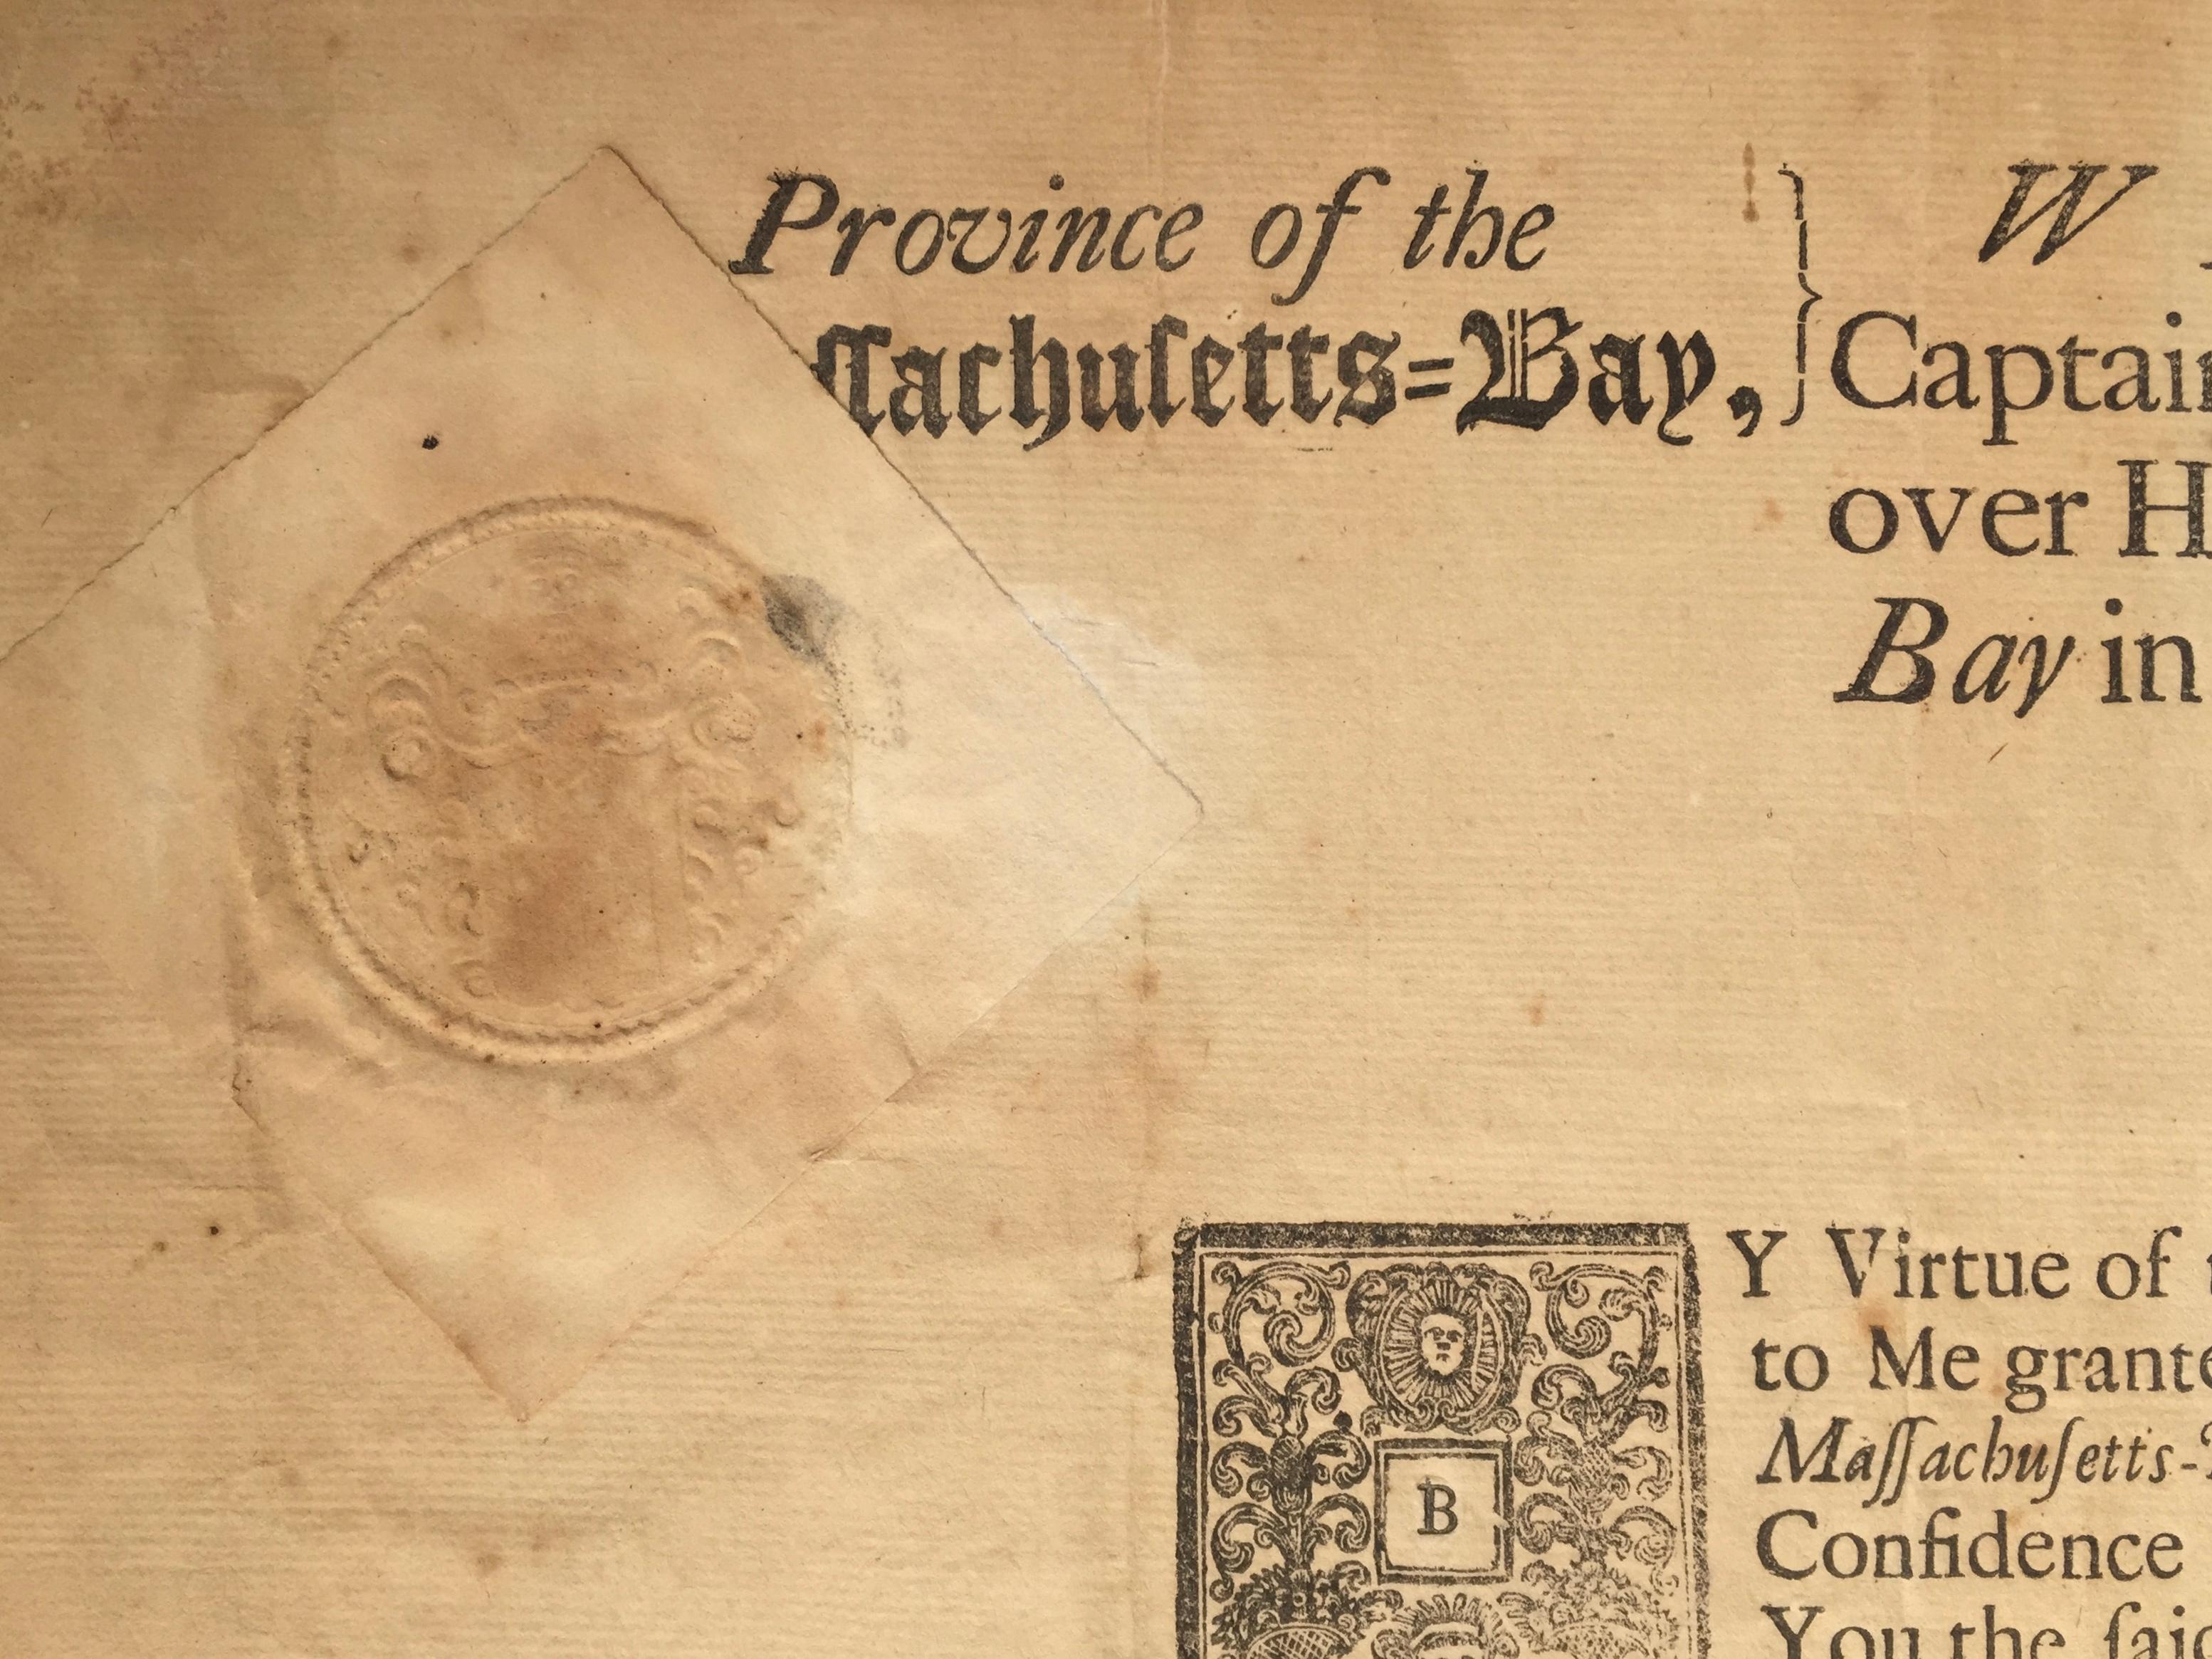 MASSACHUSETTS BAY COLONY, (Boston - 10. September 1754)
William Shirley (Generalkapitän und leitender Gouverneur)
Gedruckt und als Manuskript  Signiertes Dokument. 13 x 17